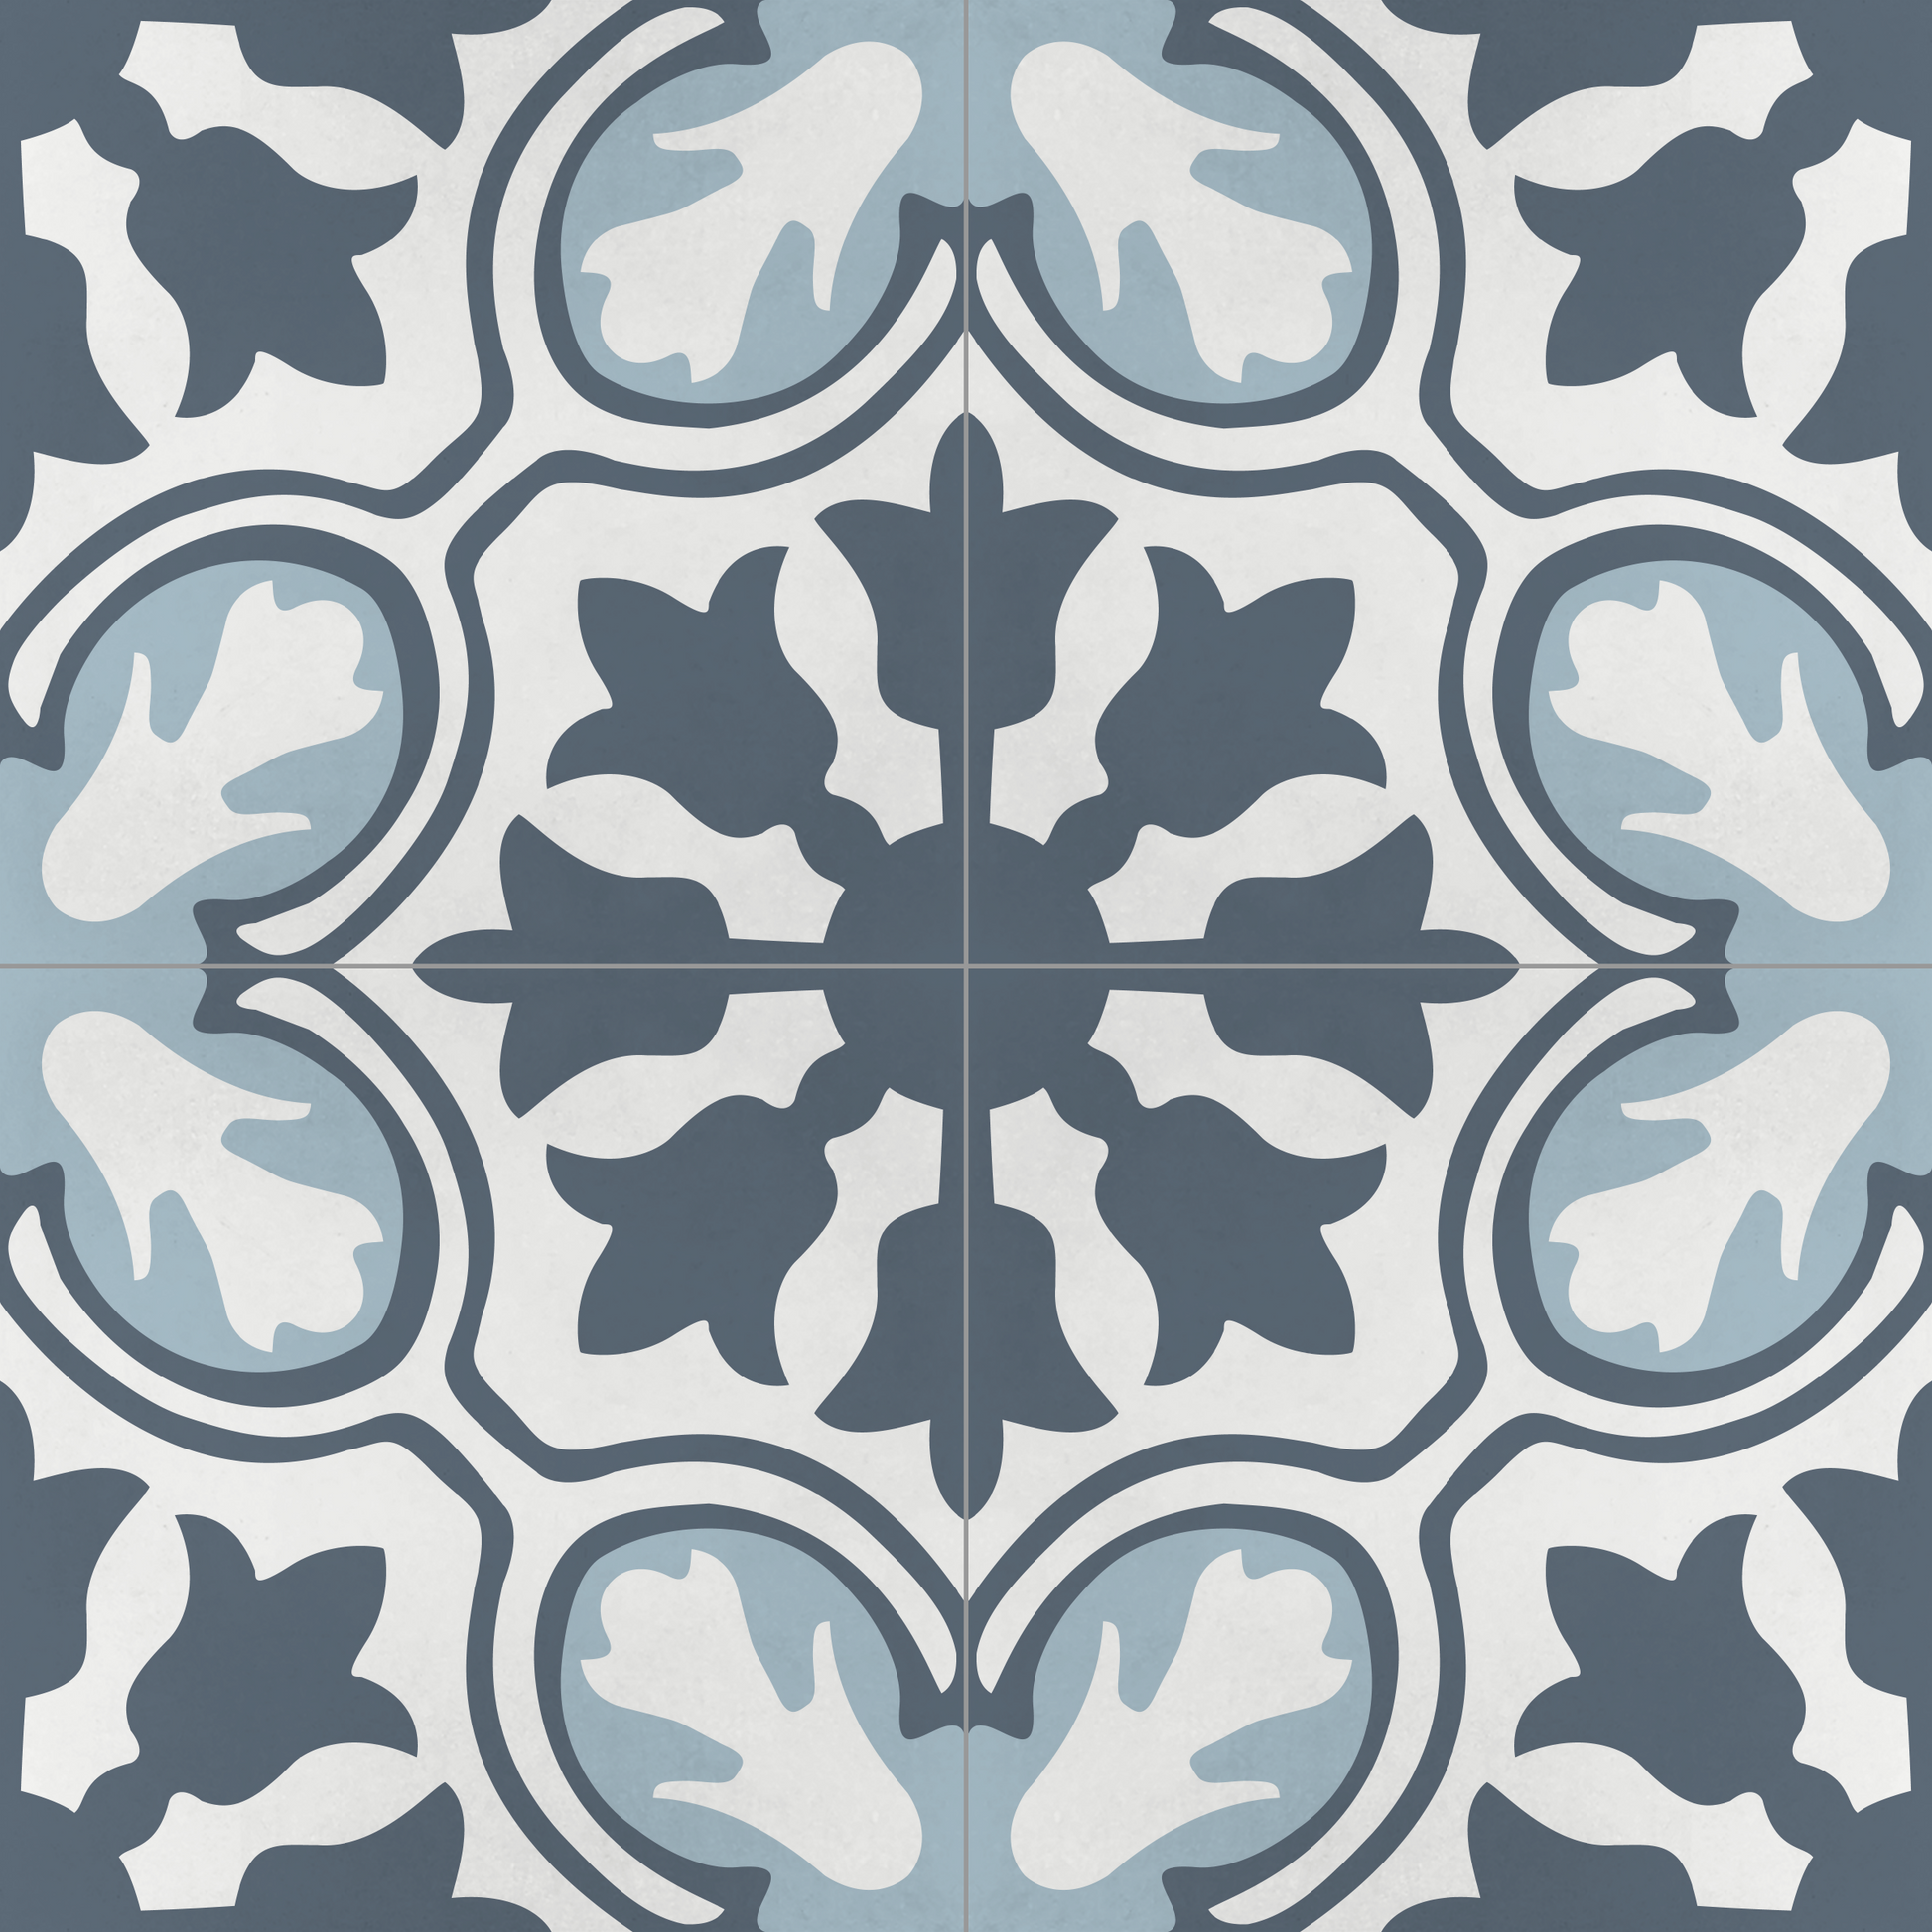 Encaustic Cement Tile, Concrete Tile, Modern Floral, Pattern Tiles